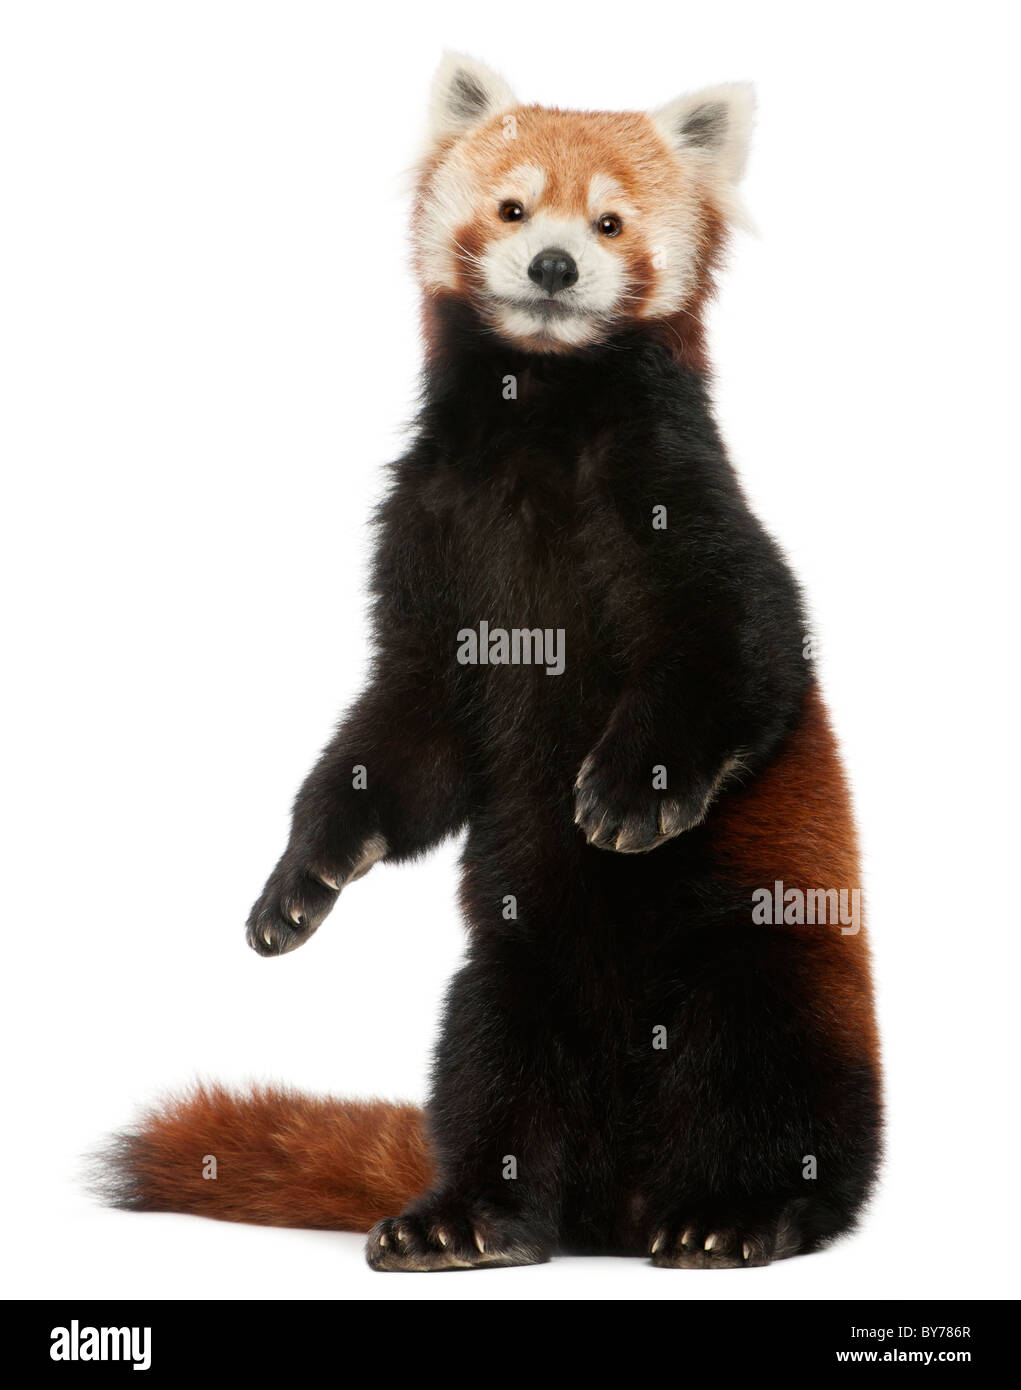 Vecchia panda rosso o Shining cat, Ailurus fulgens, 10 anni, di fronte a uno sfondo bianco Foto Stock